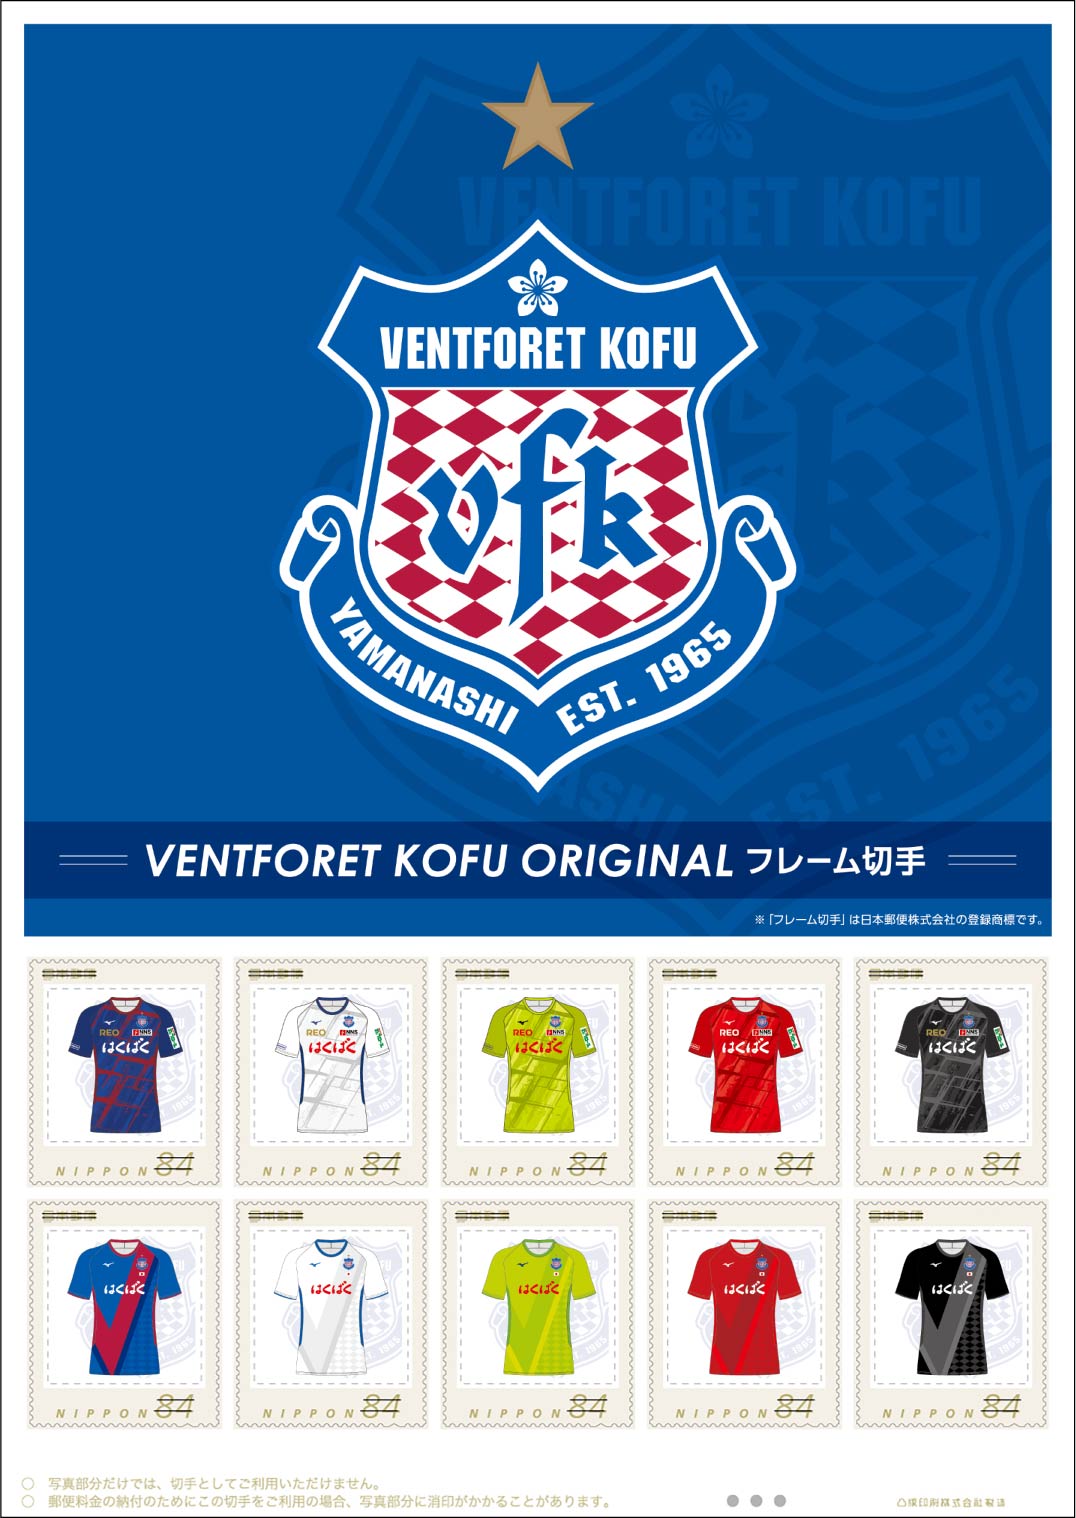 オリジナル フレーム切手「VENTFORET KOFU ORIGINALフレーム切手」の販売開始